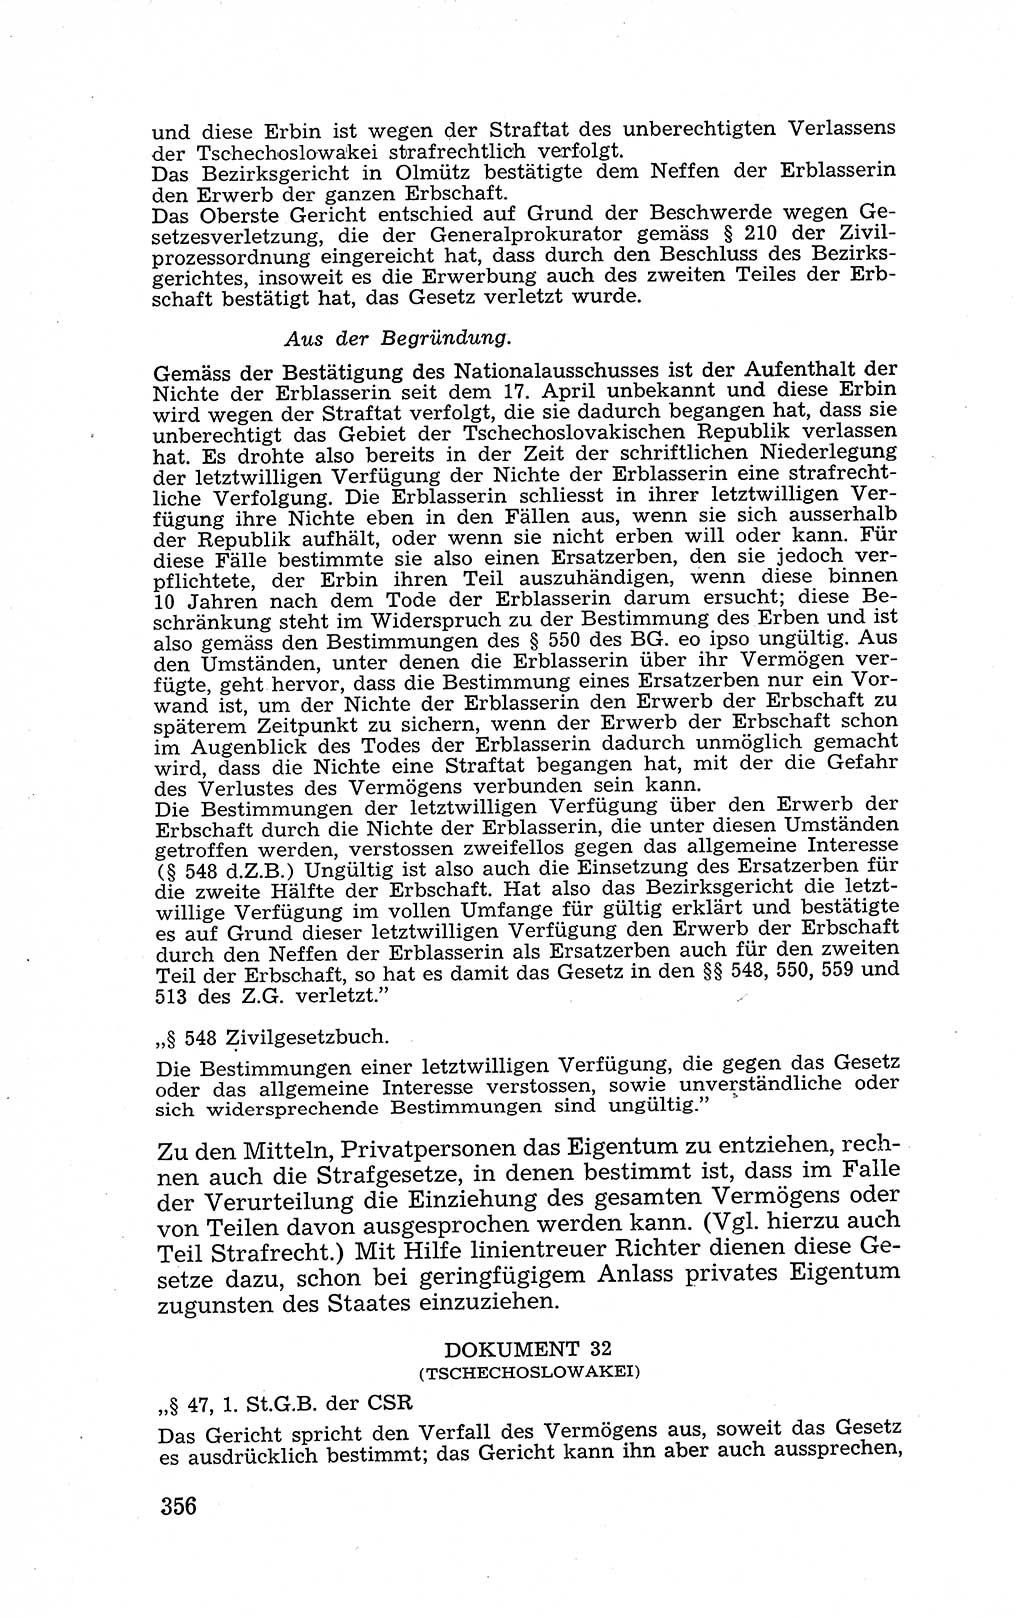 Recht in Fesseln, Dokumente, Internationale Juristen-Kommission [Bundesrepublik Deutschland (BRD)] 1955, Seite 356 (R. Dok. IJK BRD 1955, S. 356)